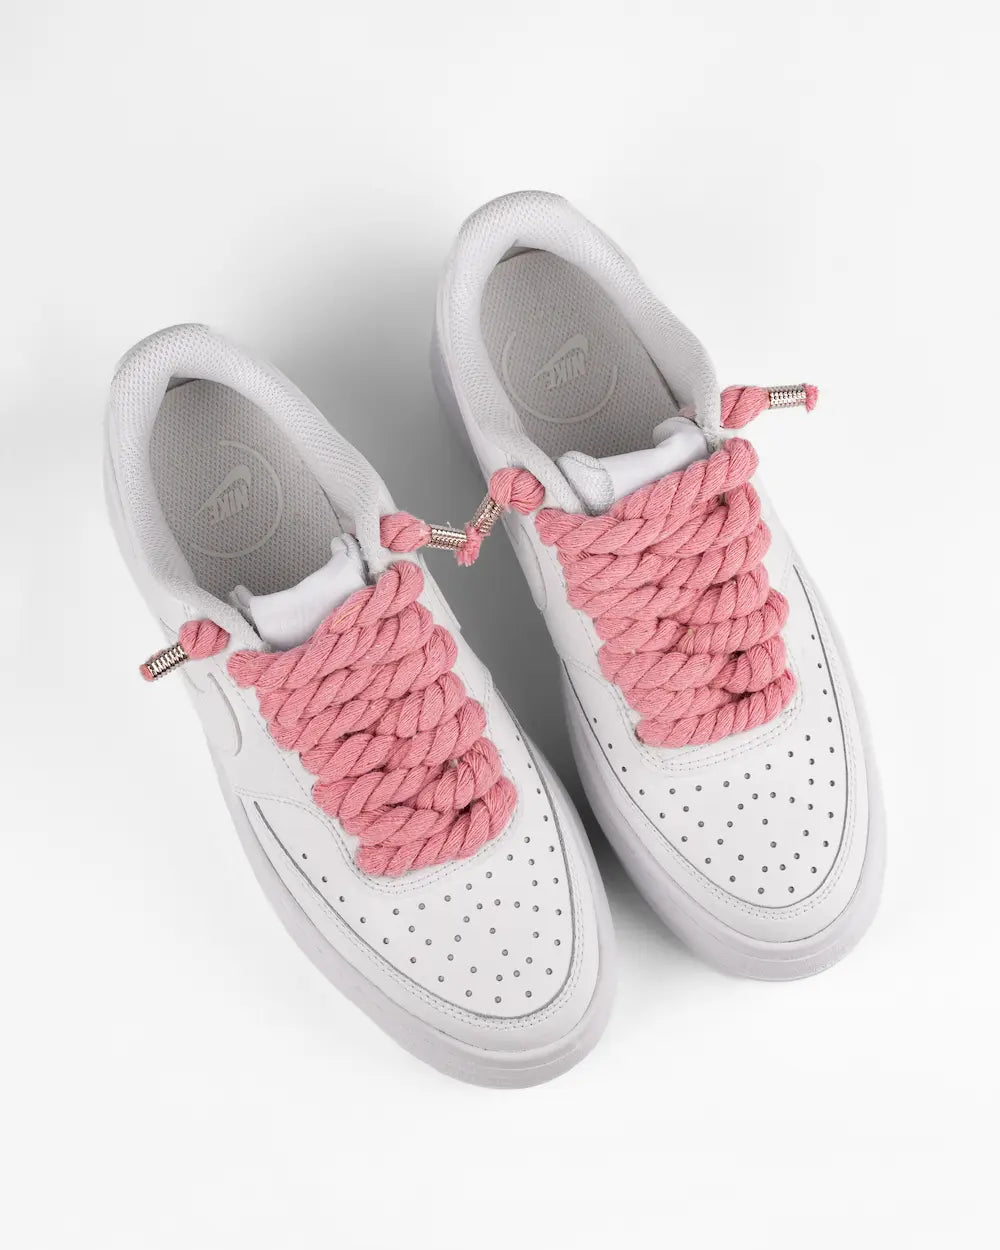 Nike Court Vision Platform personalizzata con lacci in corda rosa pastello